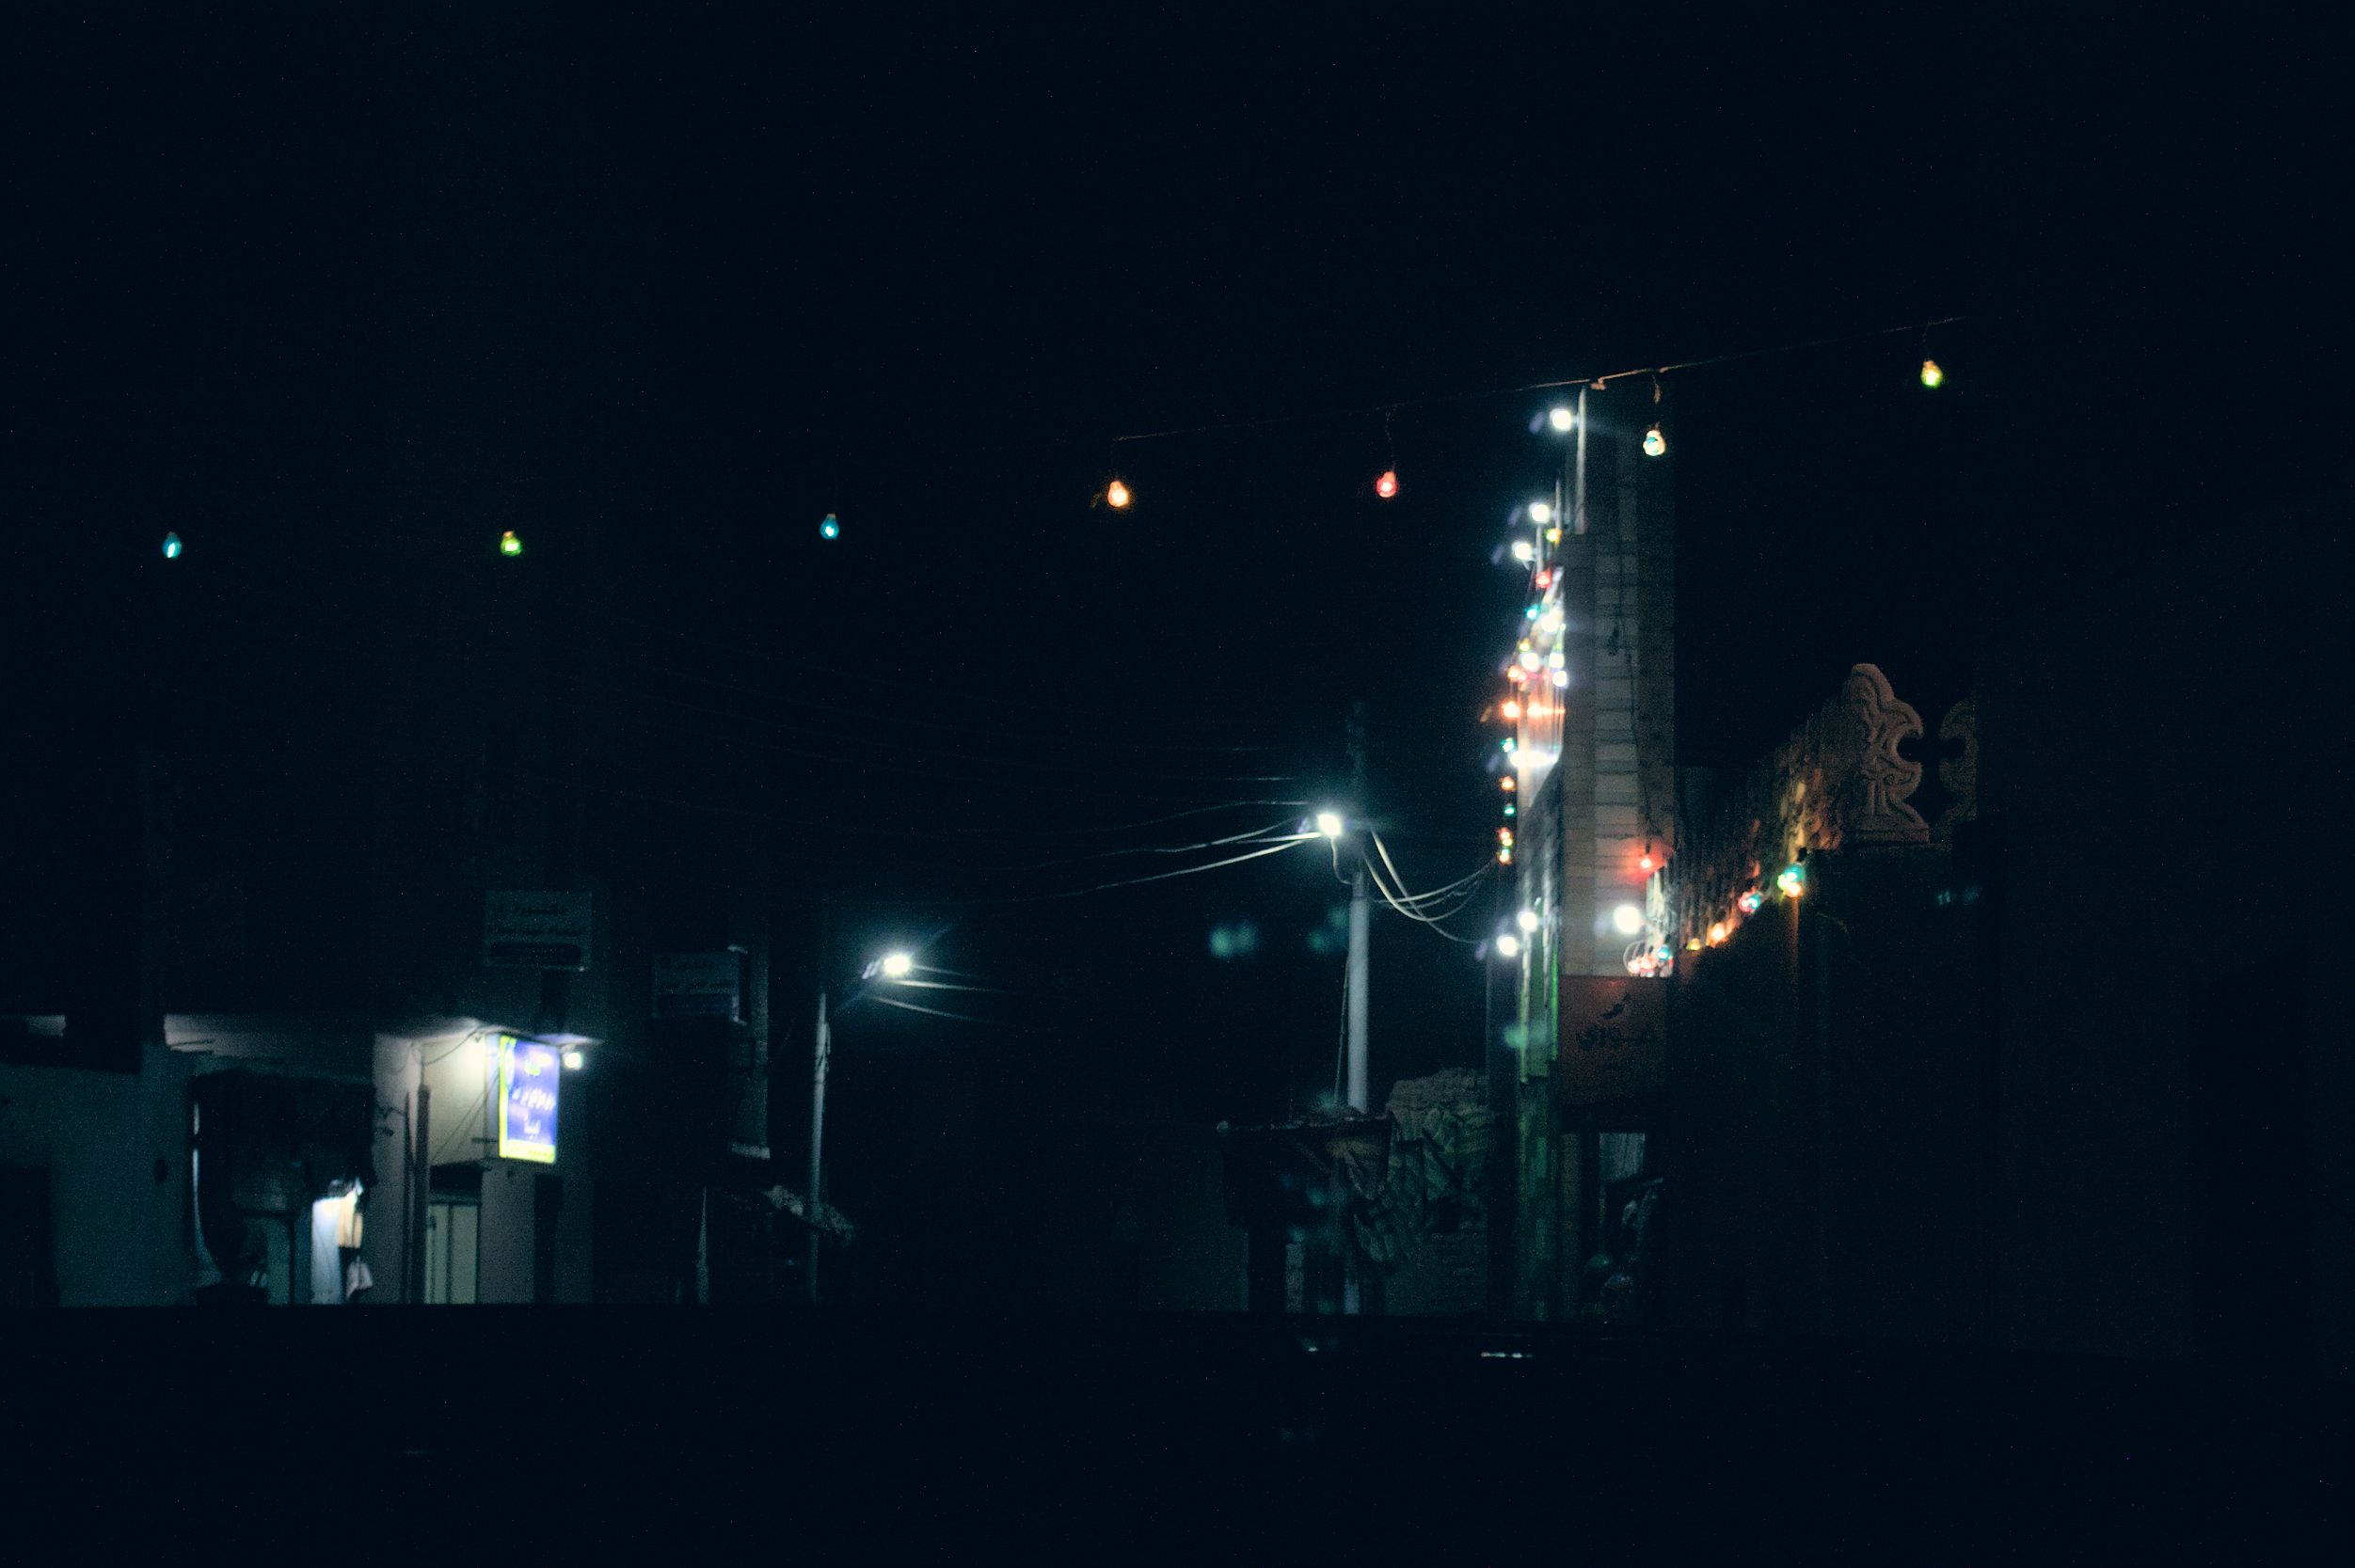 village-street-at-night.jpg